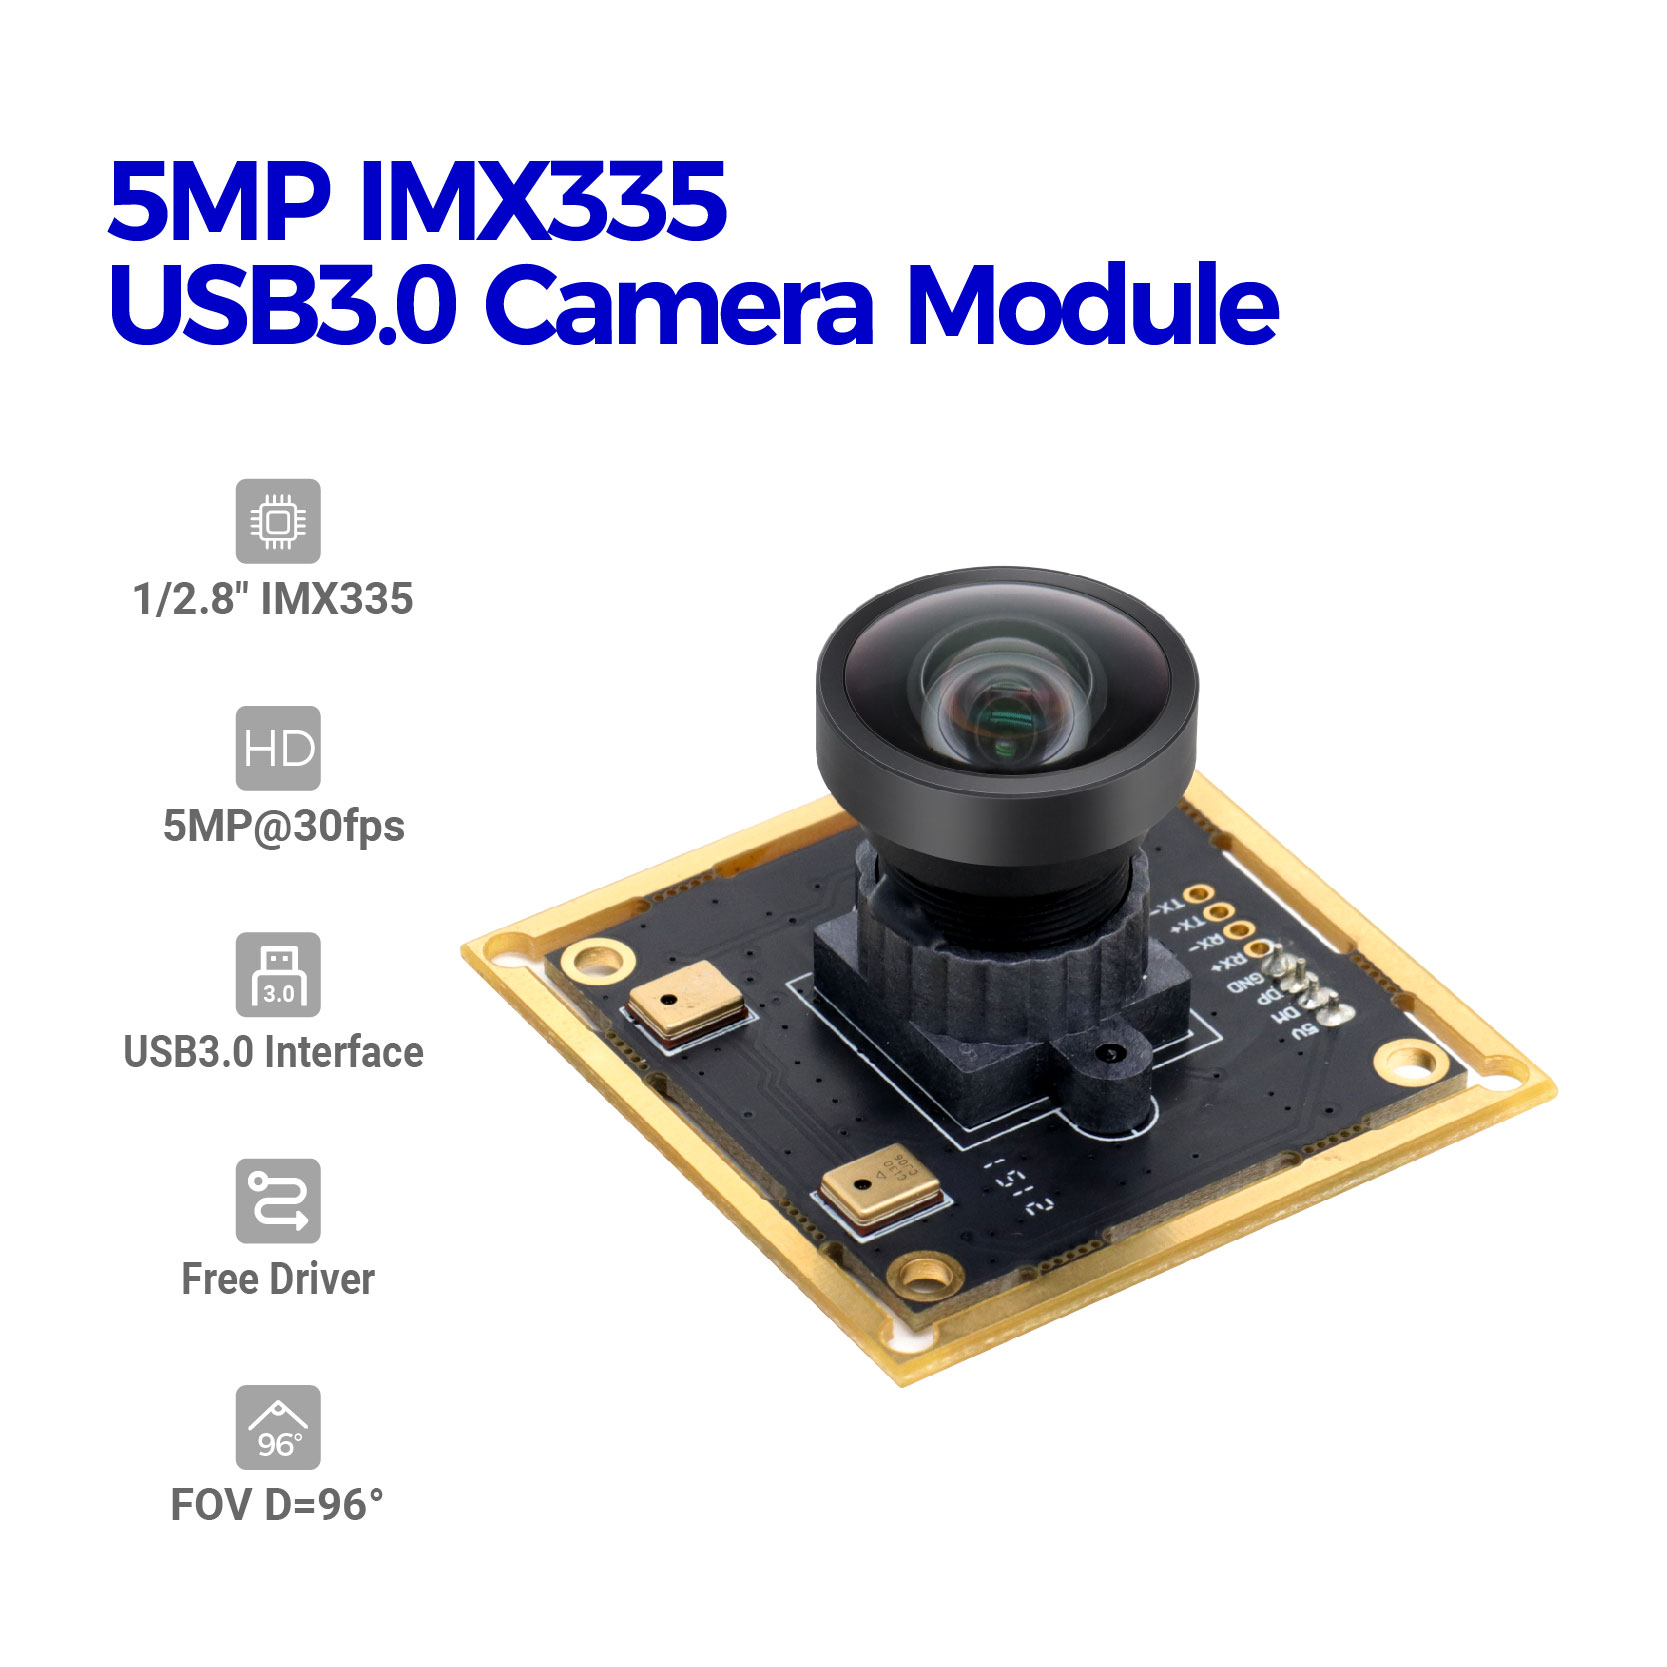 5MP IMX335 USB3.0 Modul Kamera